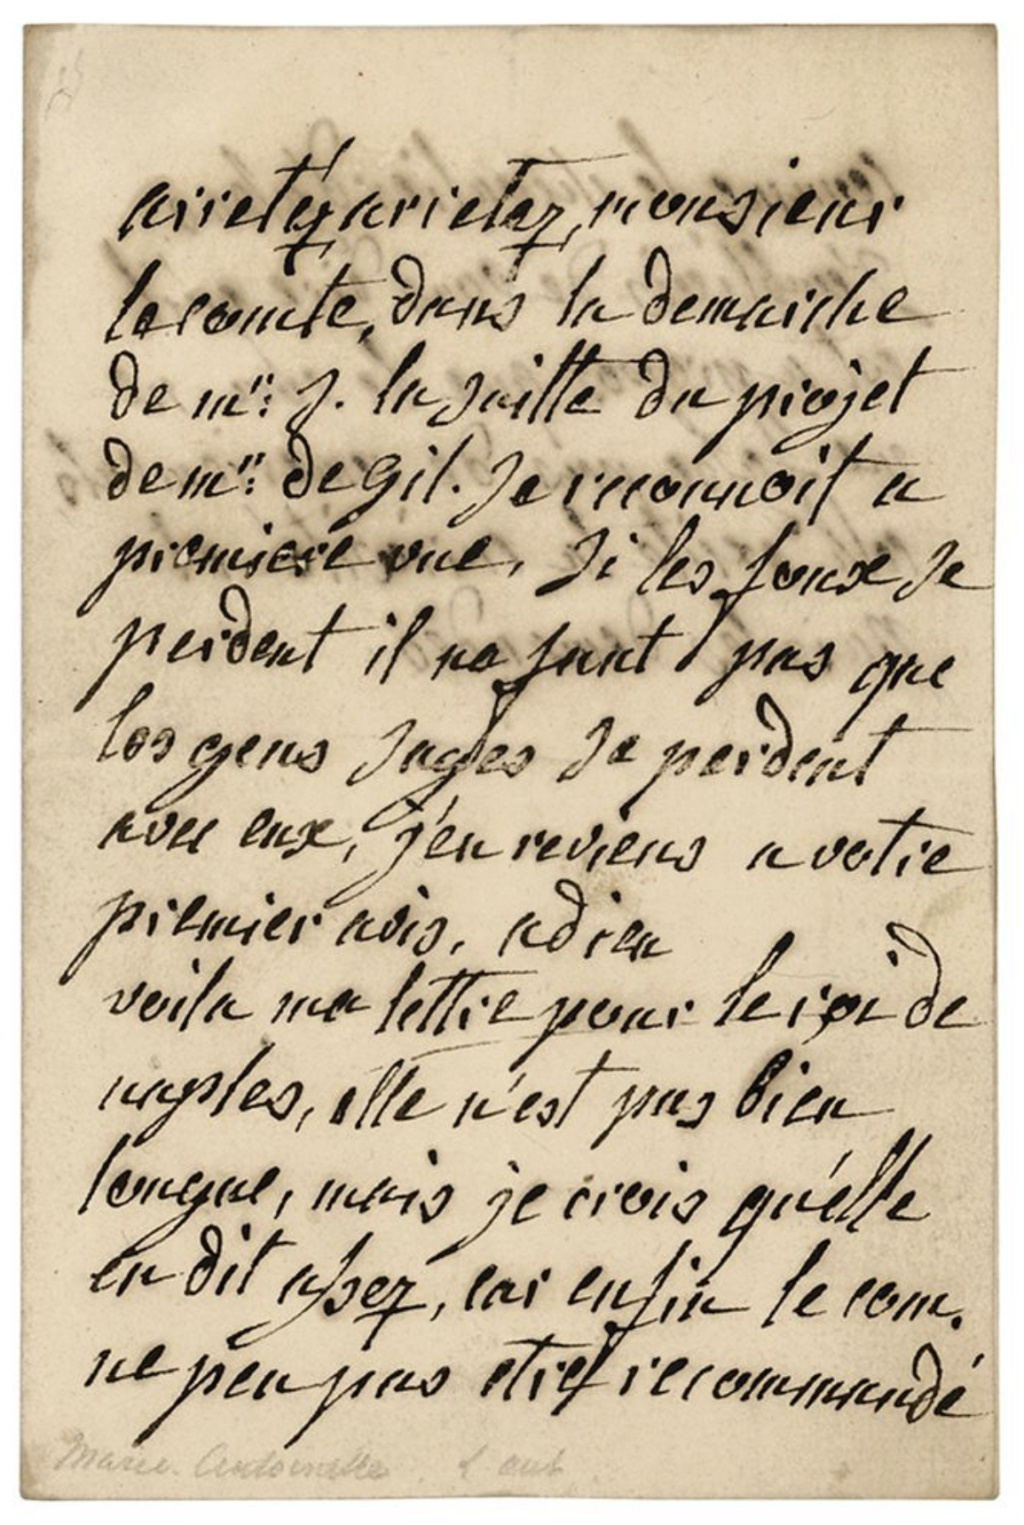 La correspondance de Marie-Antoinette avec le comte de Mercy-Argenteau - Page 3 Capt5290